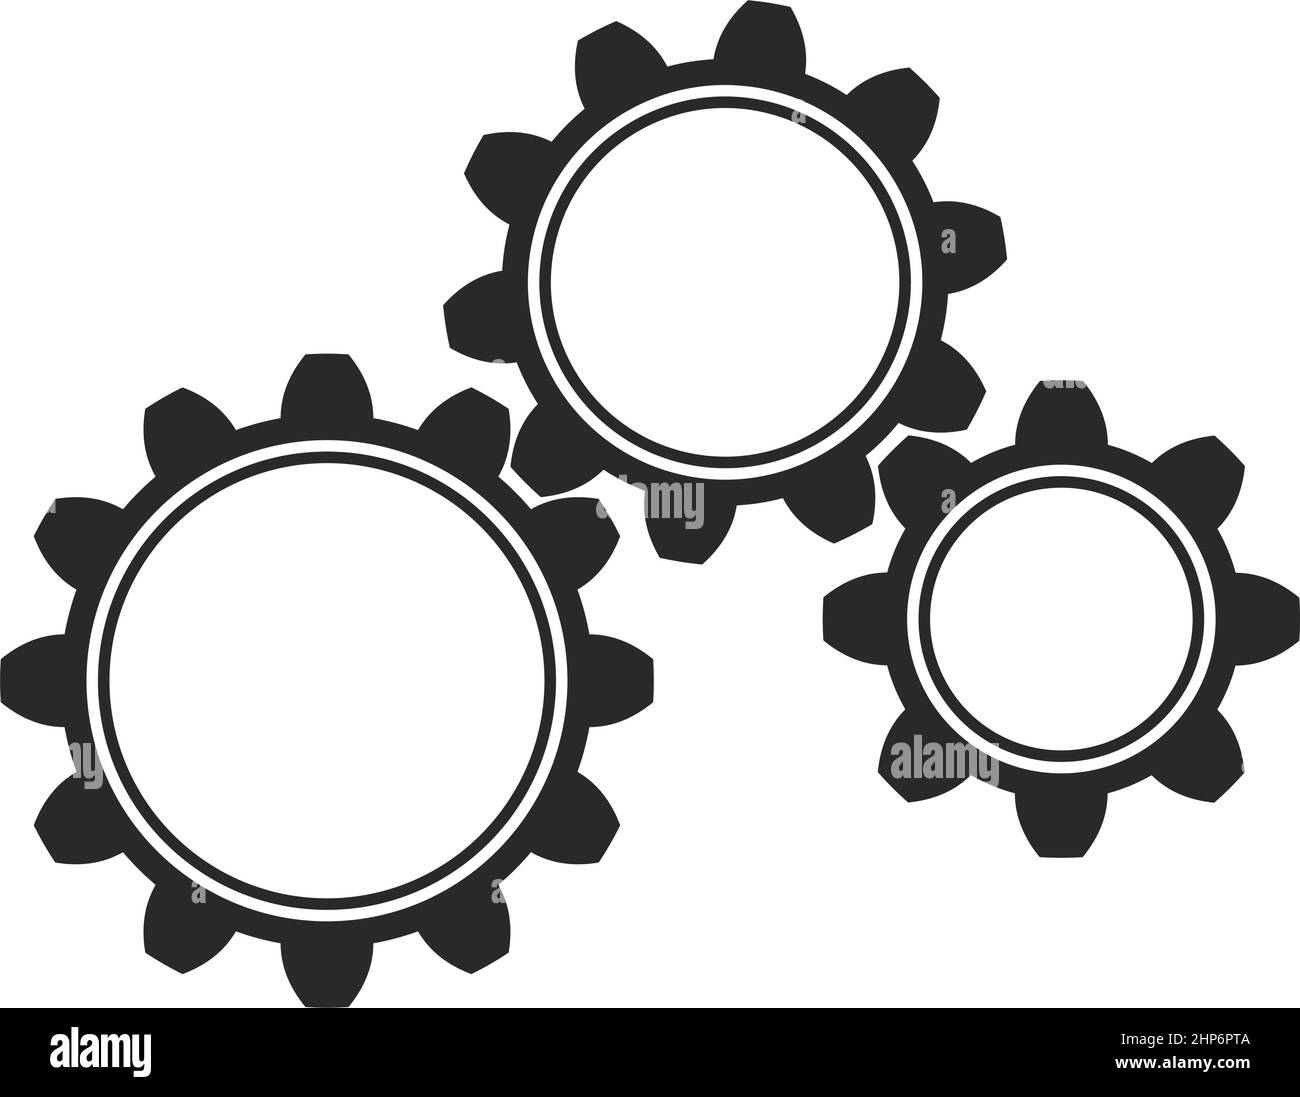 Simbolo di ingranaggio funzionante o ruota dentata su sfondo bianco isolato. Illustrazione Vettoriale